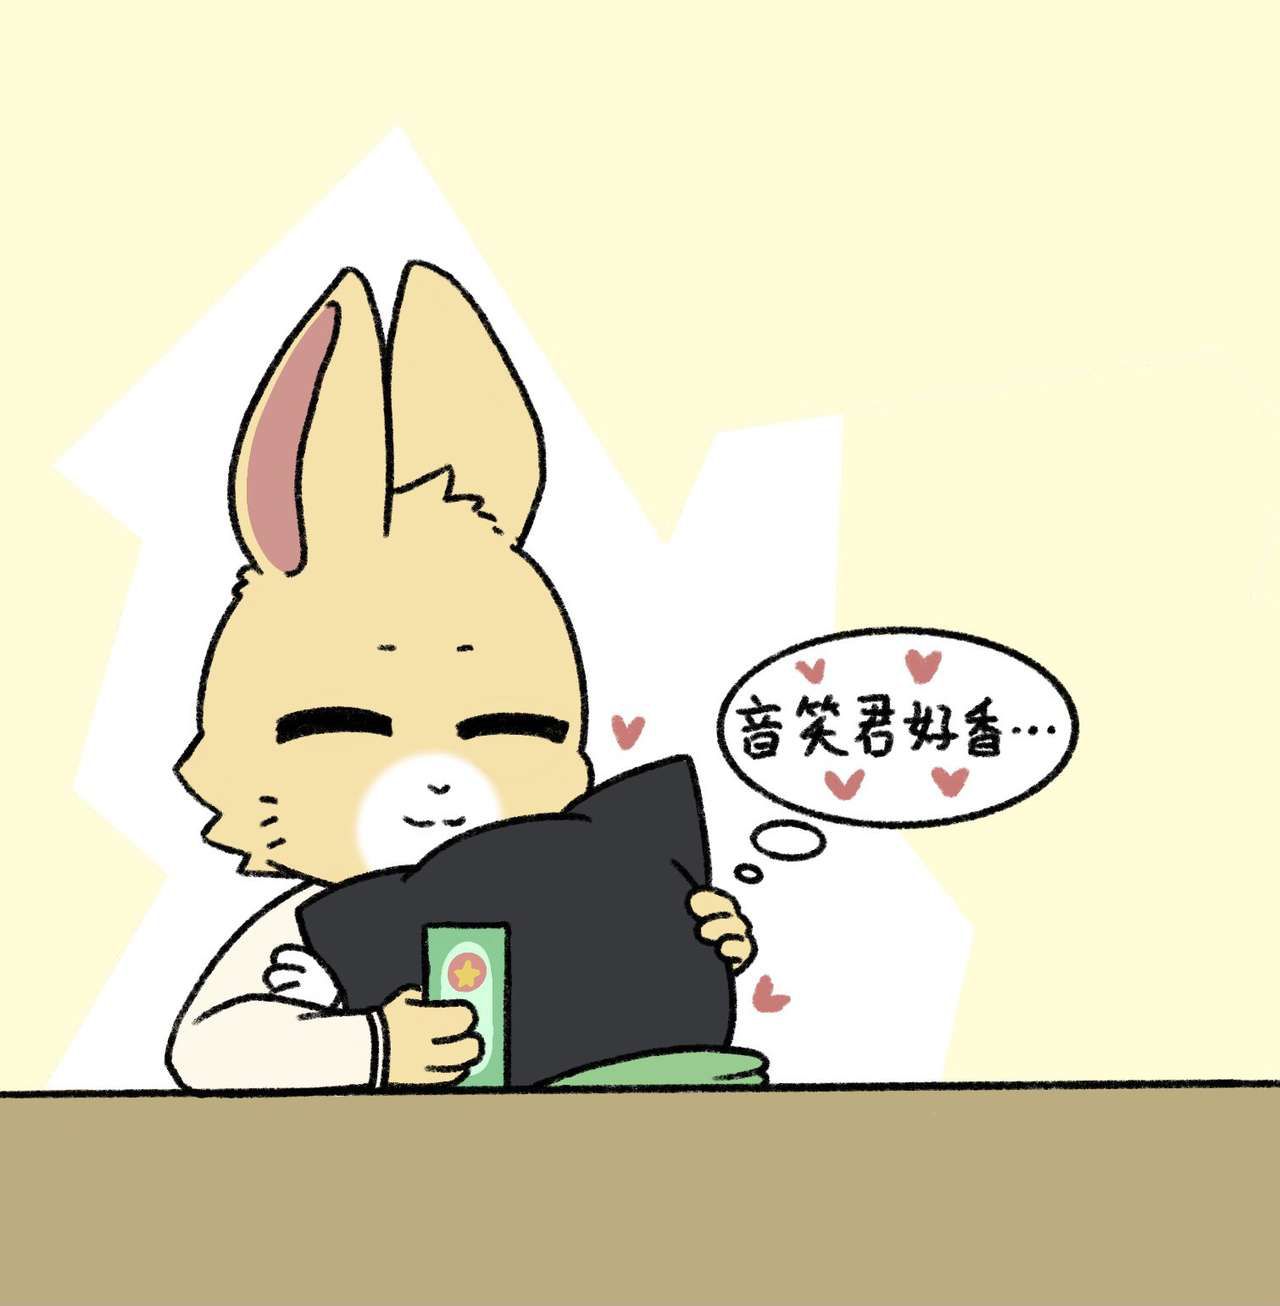 [twitter] kaicuirabbit (56480341) 114